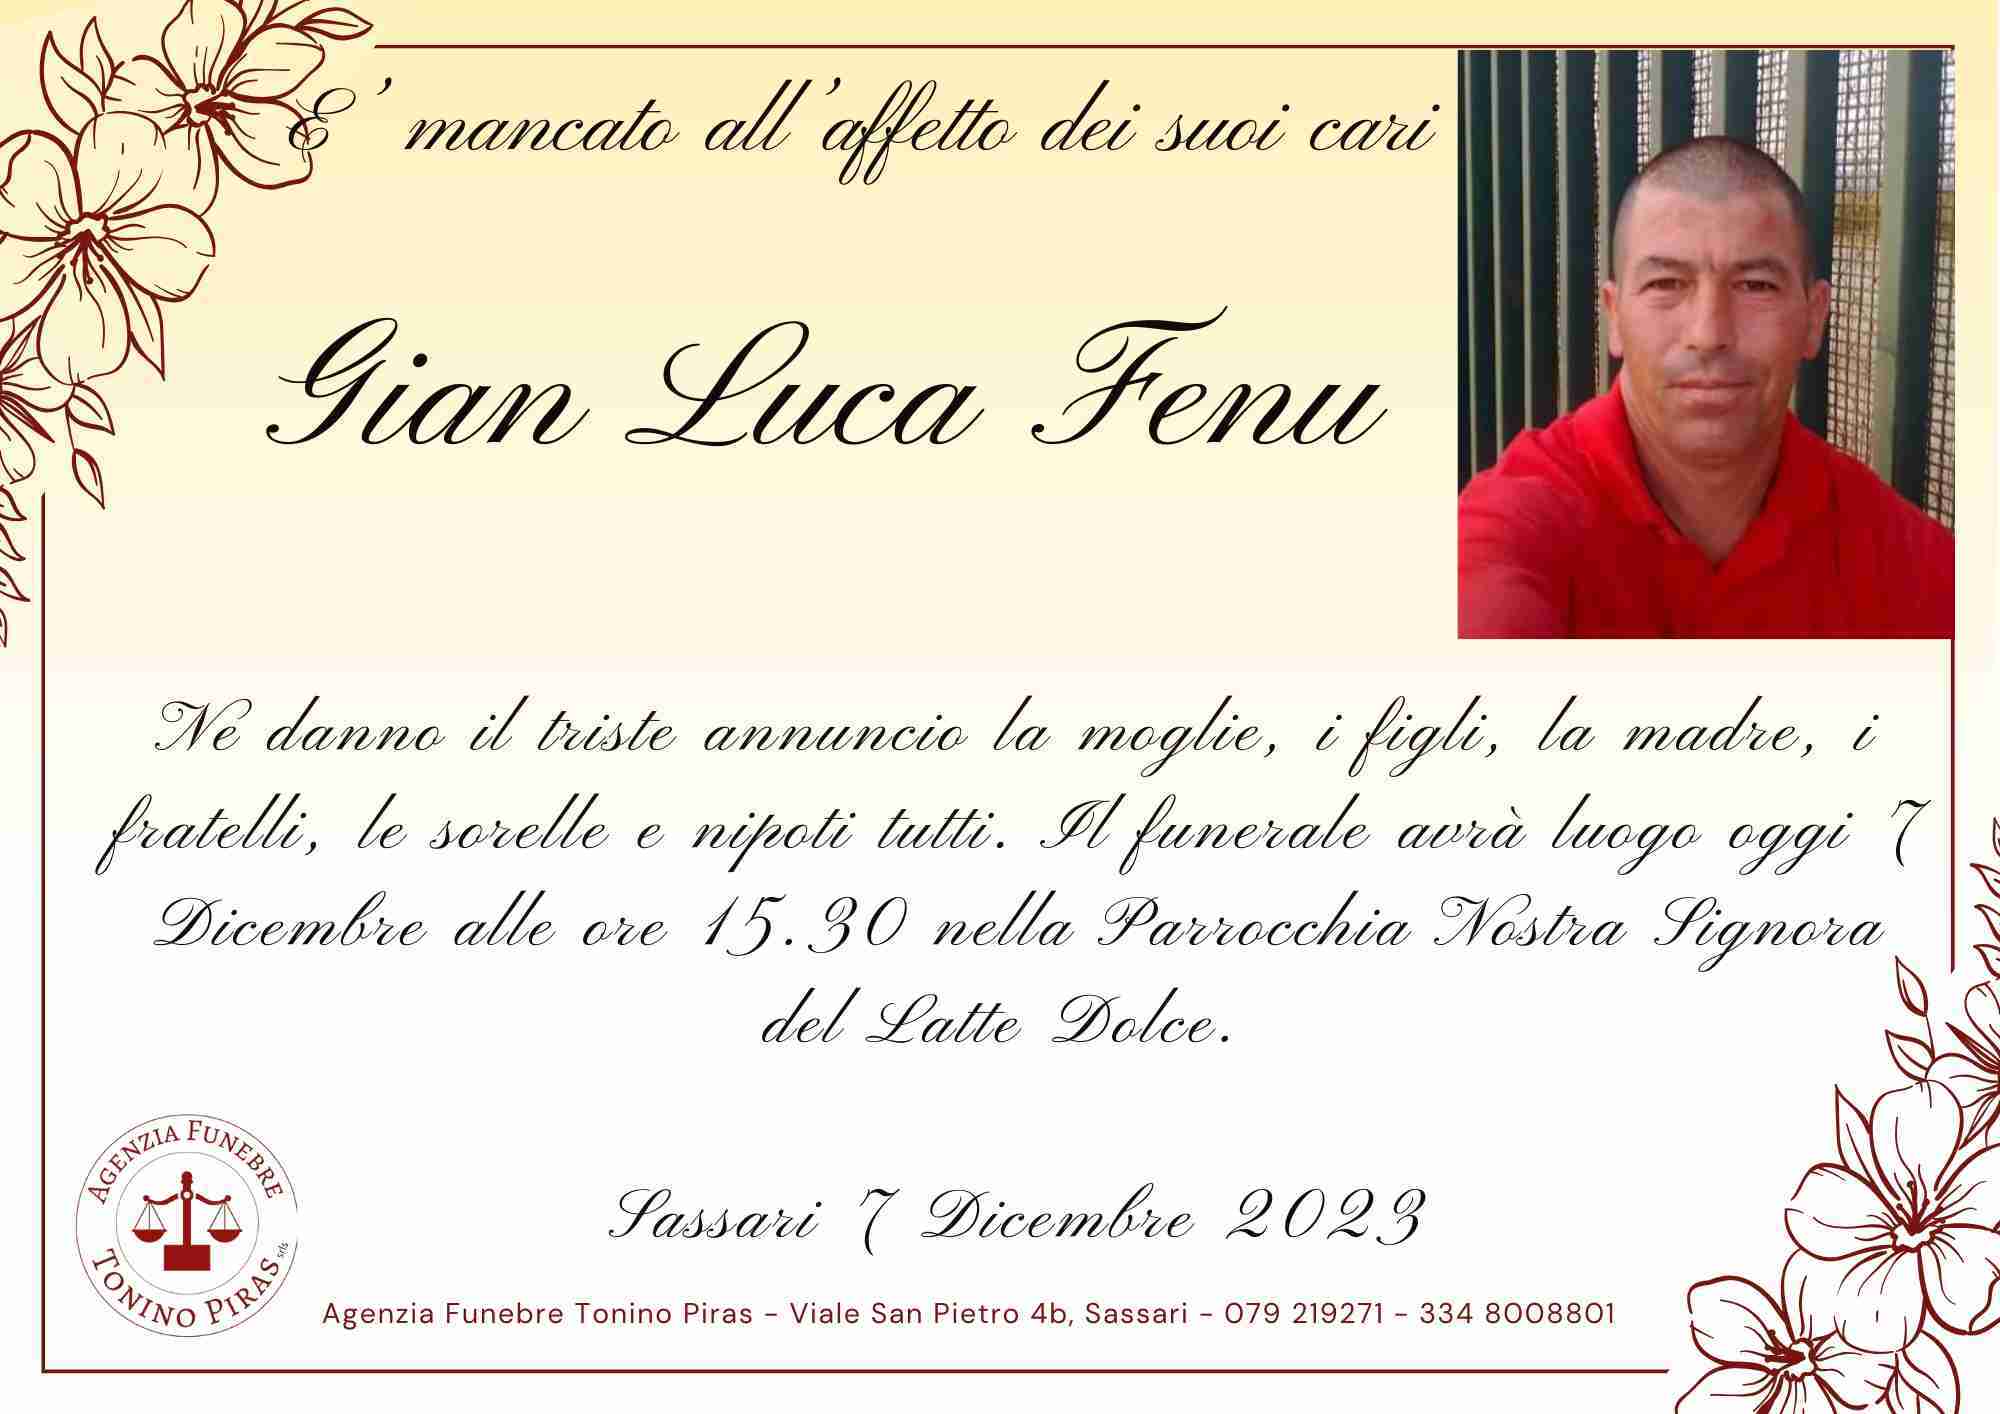 Gian Luca Fenu